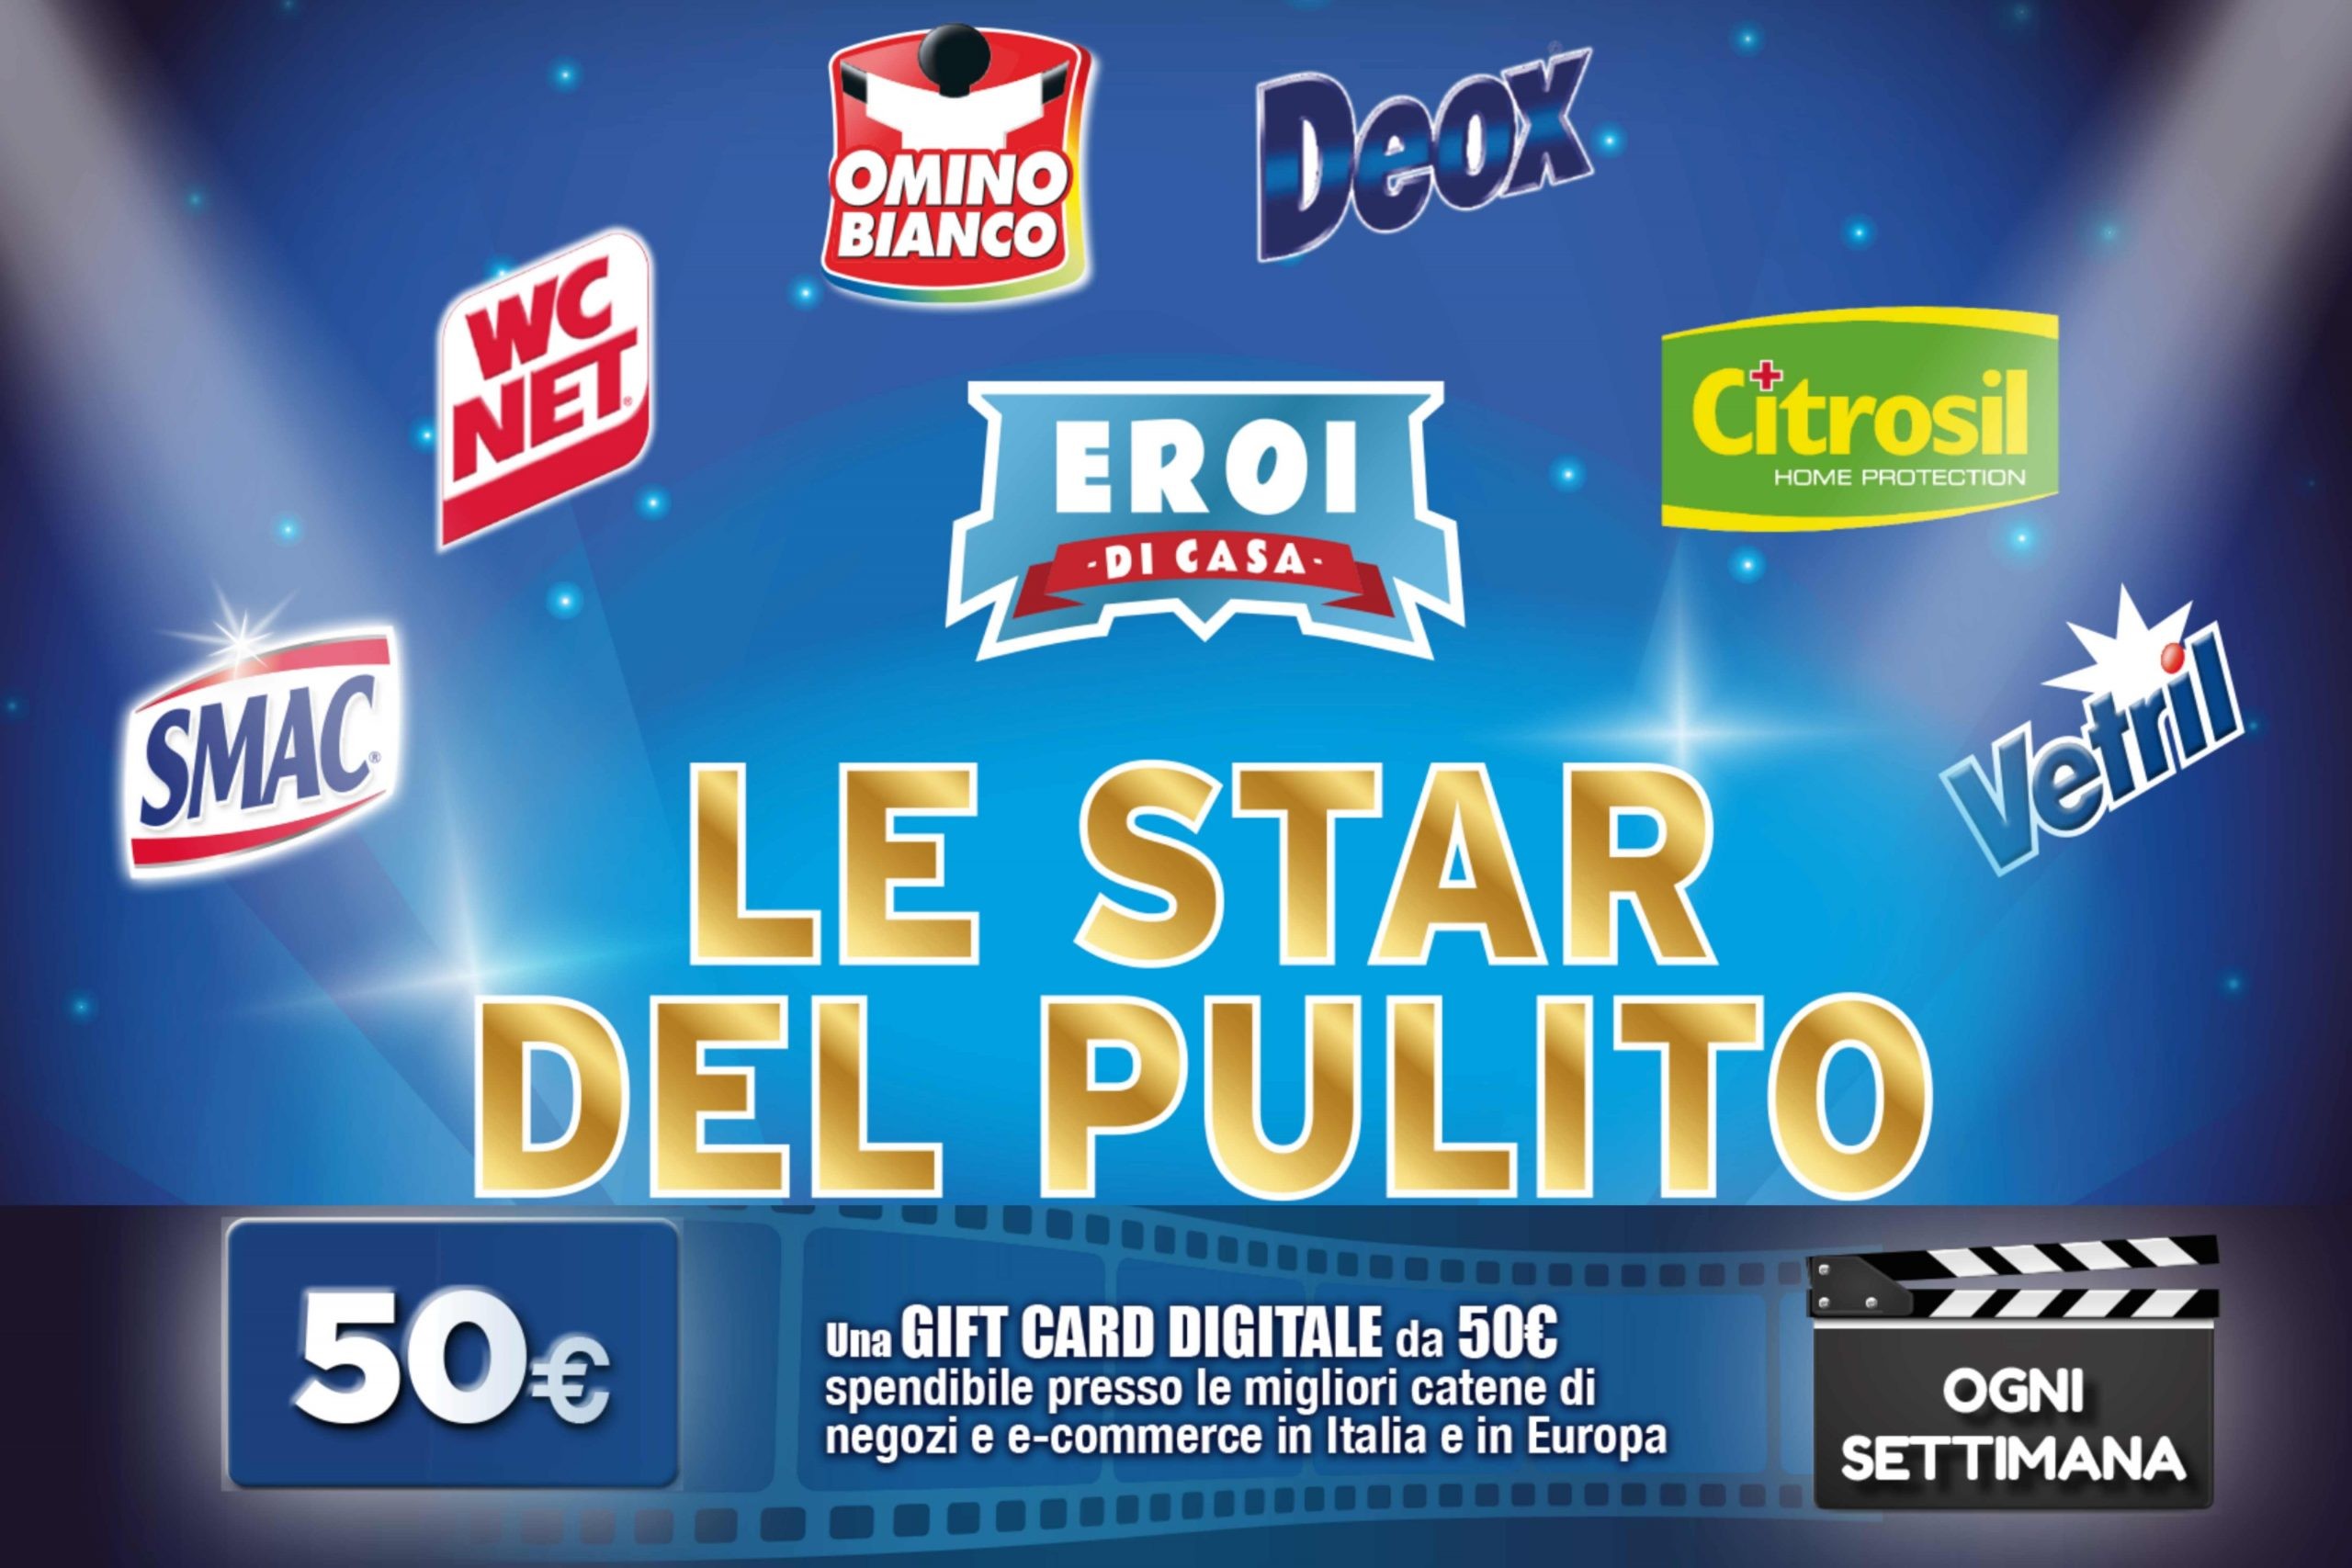 Concorso “Le star del pulito”: come vincere una gift card da 50€ e una Smart Tv Samsung